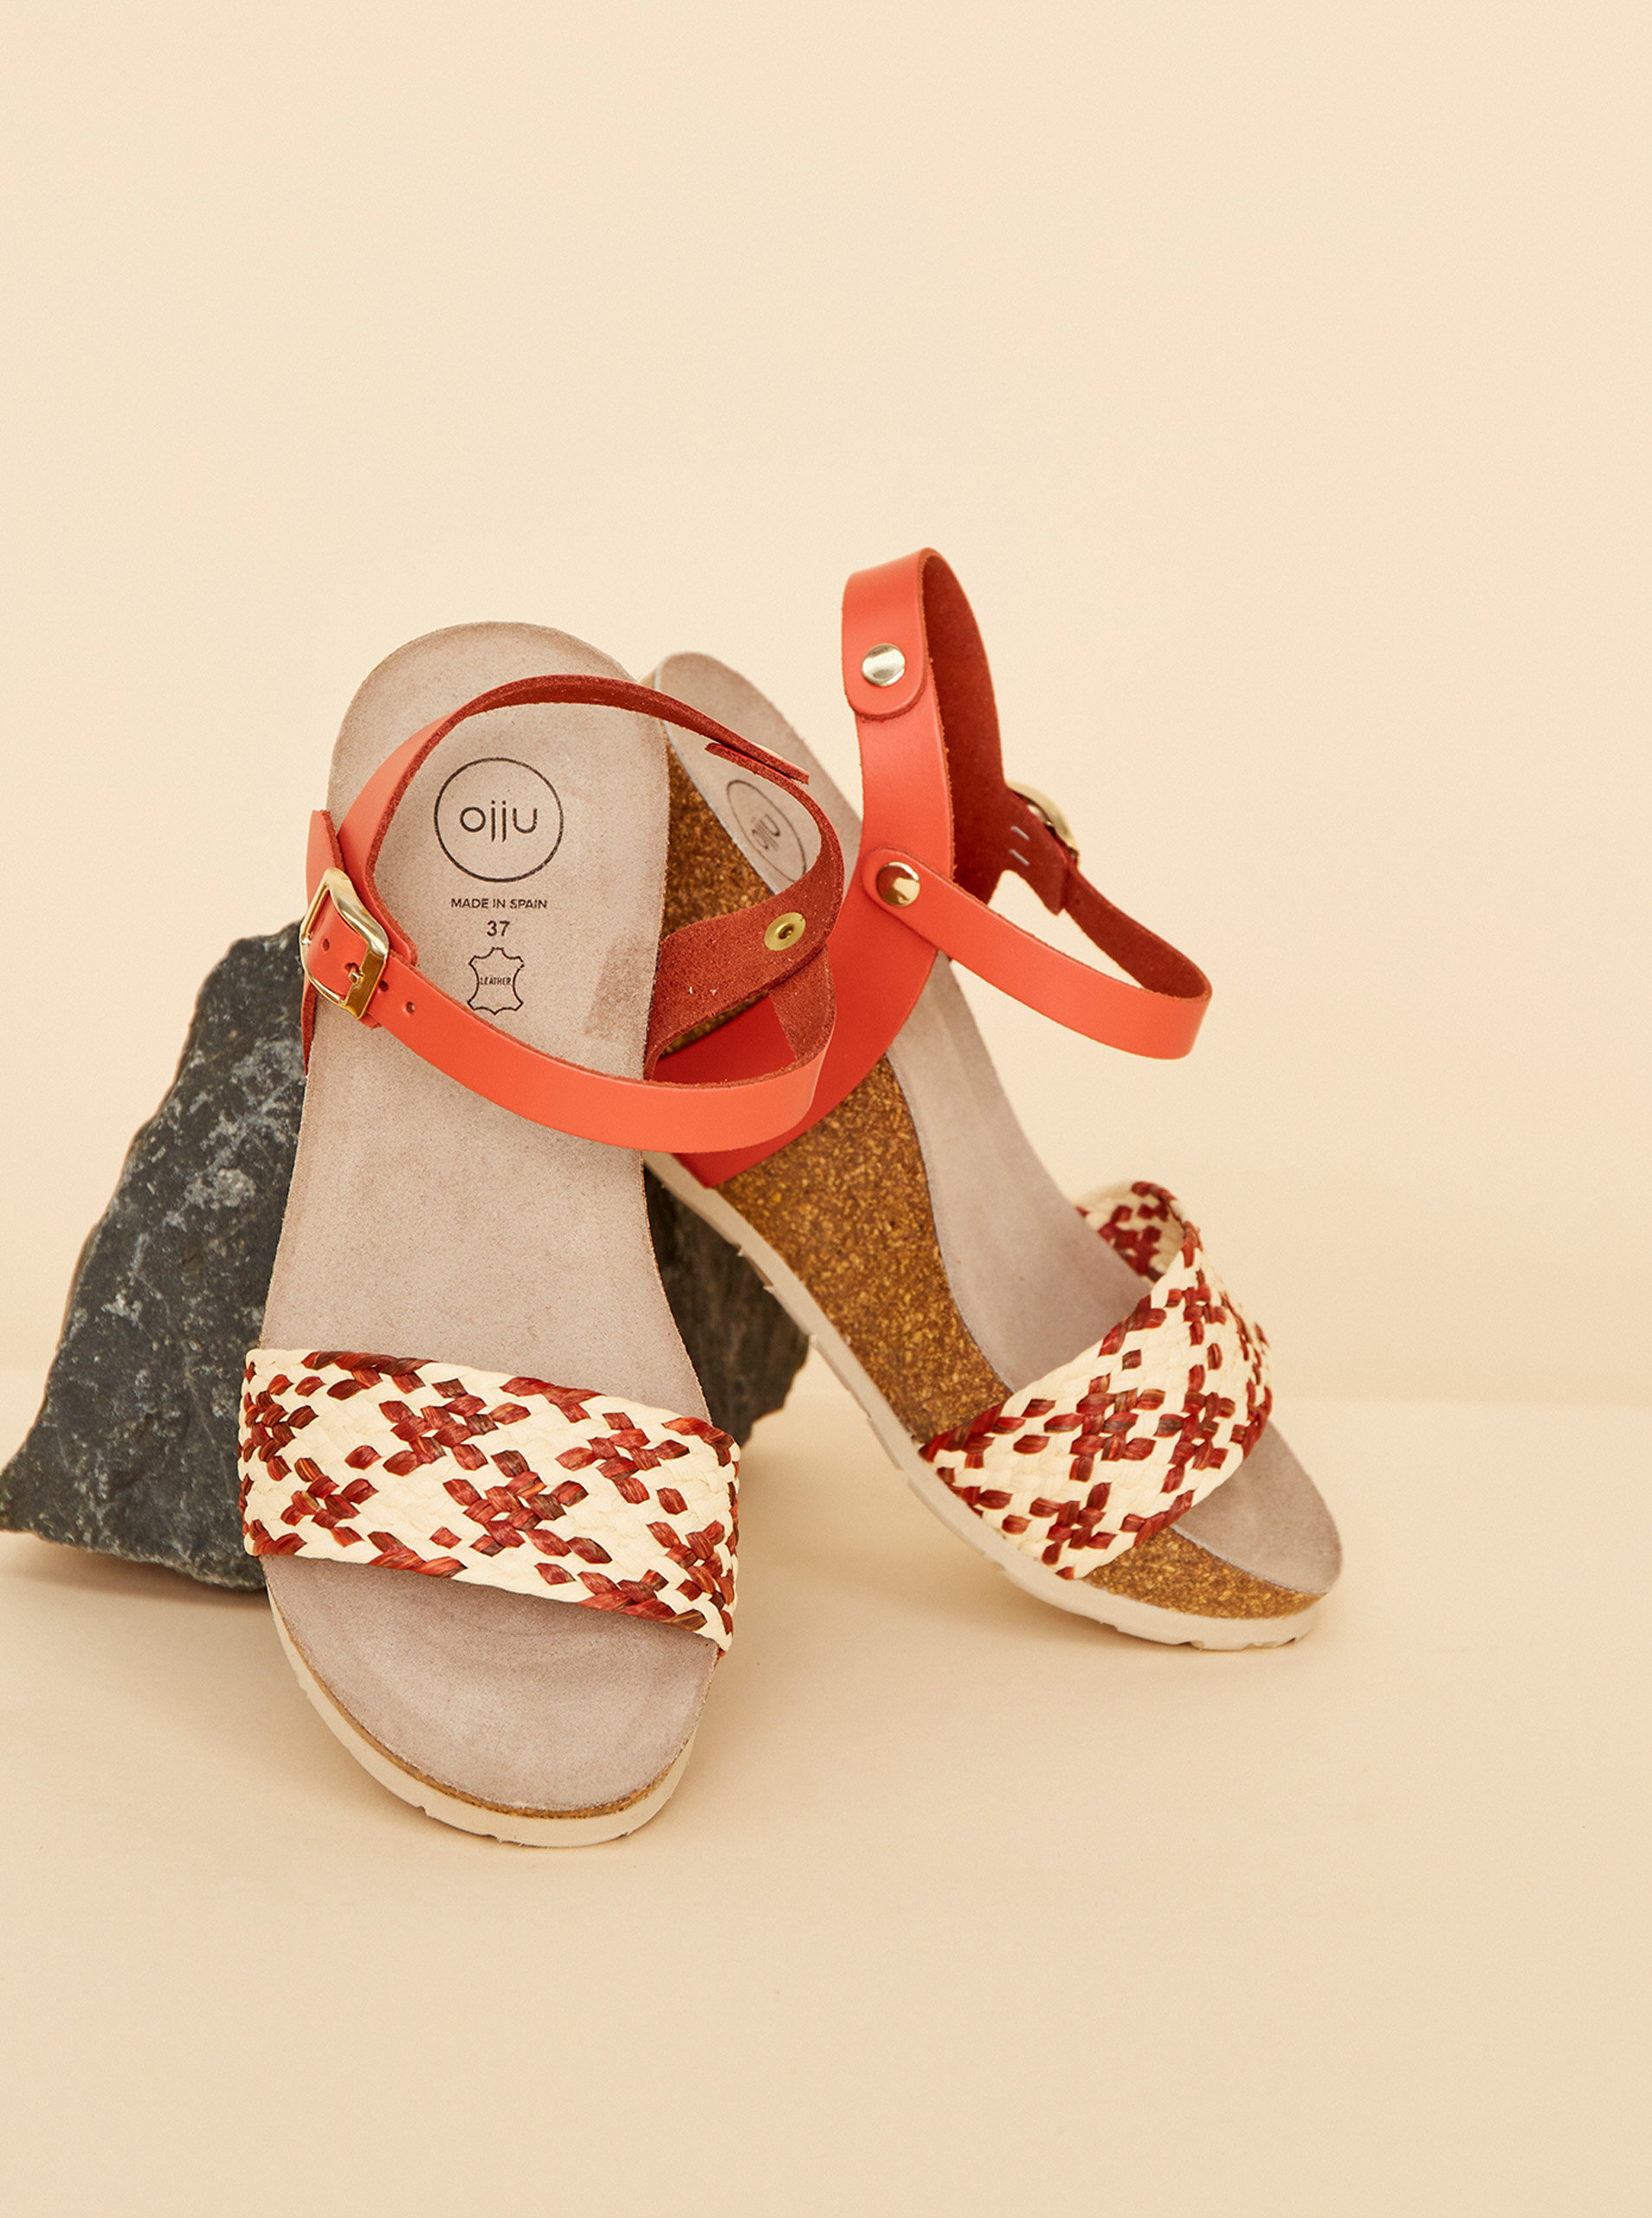 Fotografie Béžovo-červené dámské sandálky na klínku JJU OJJU A22:1306497_267